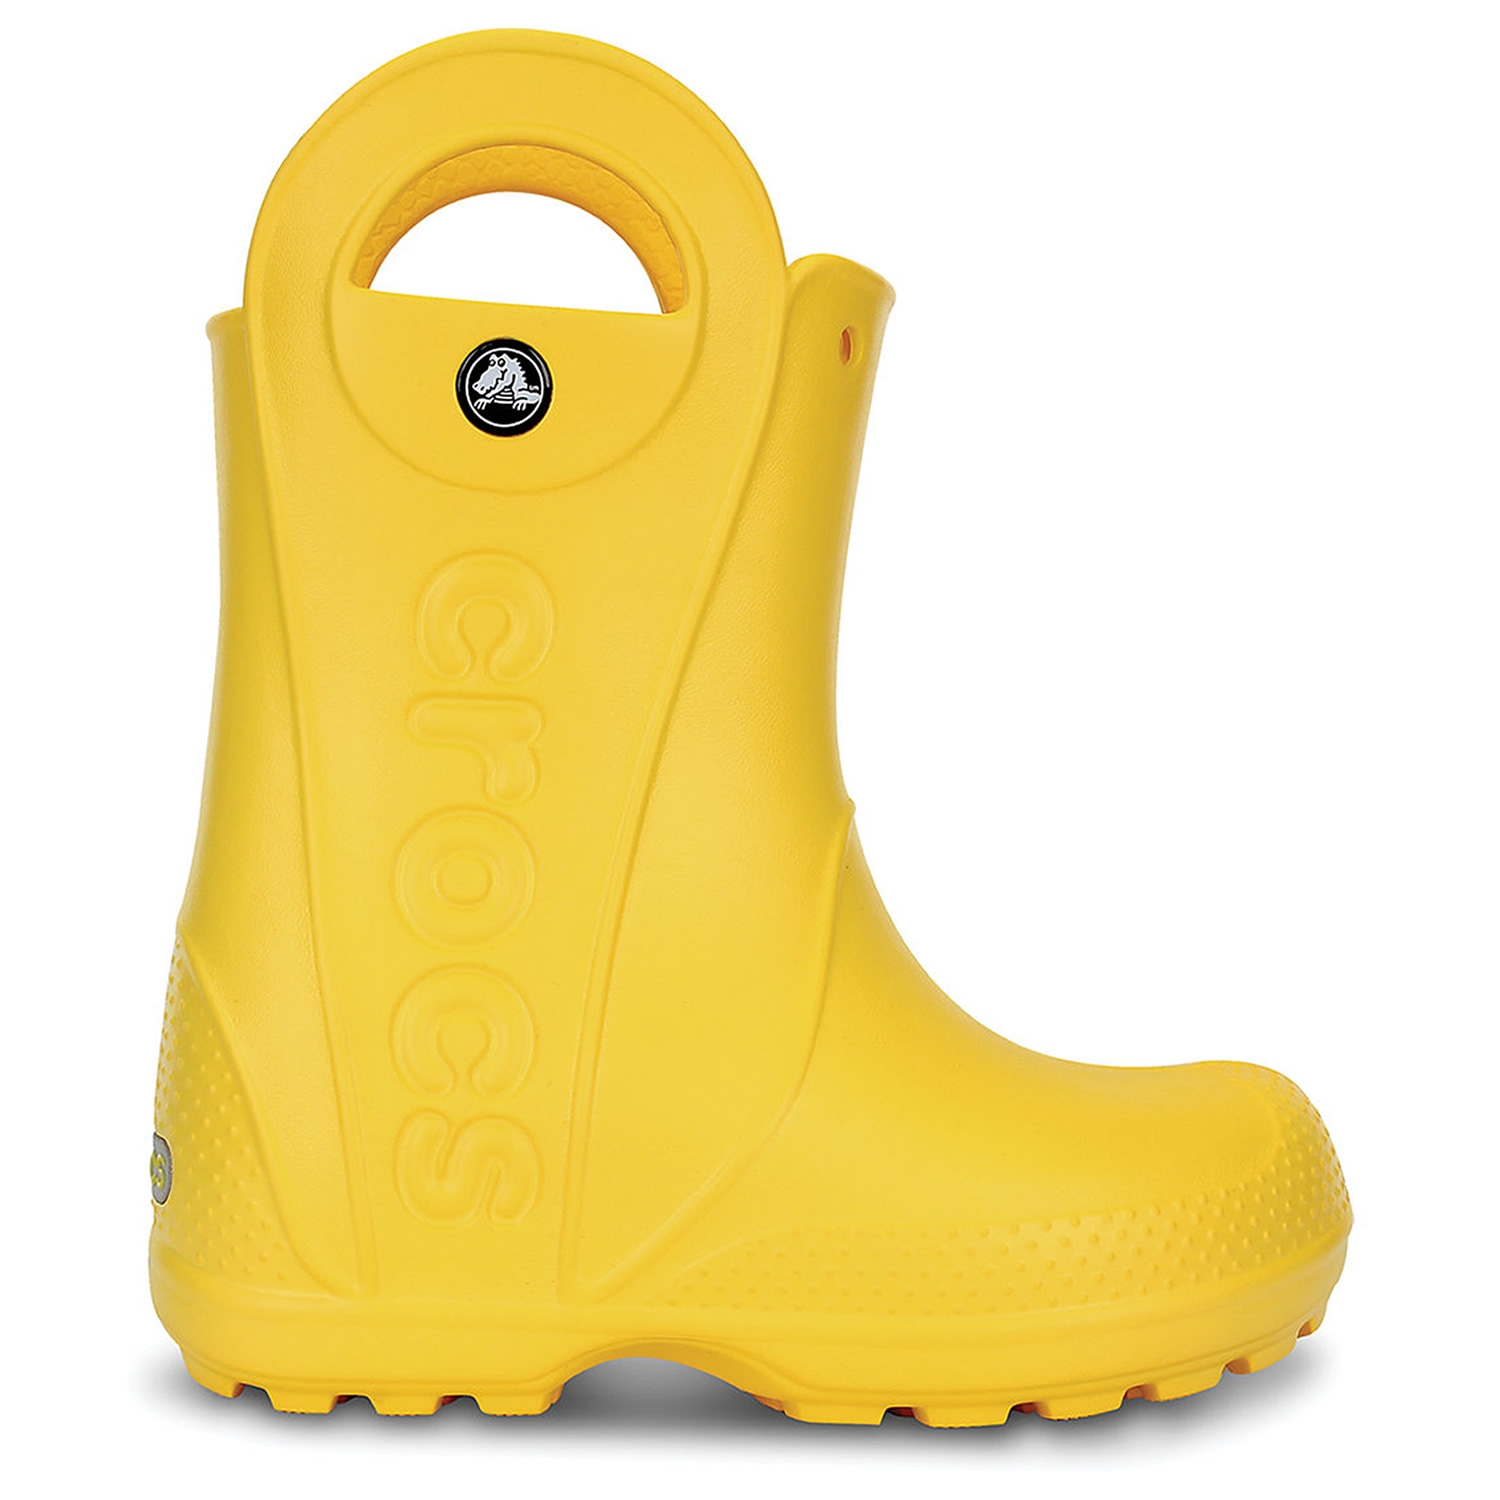 crocs handle it rain boot yellow